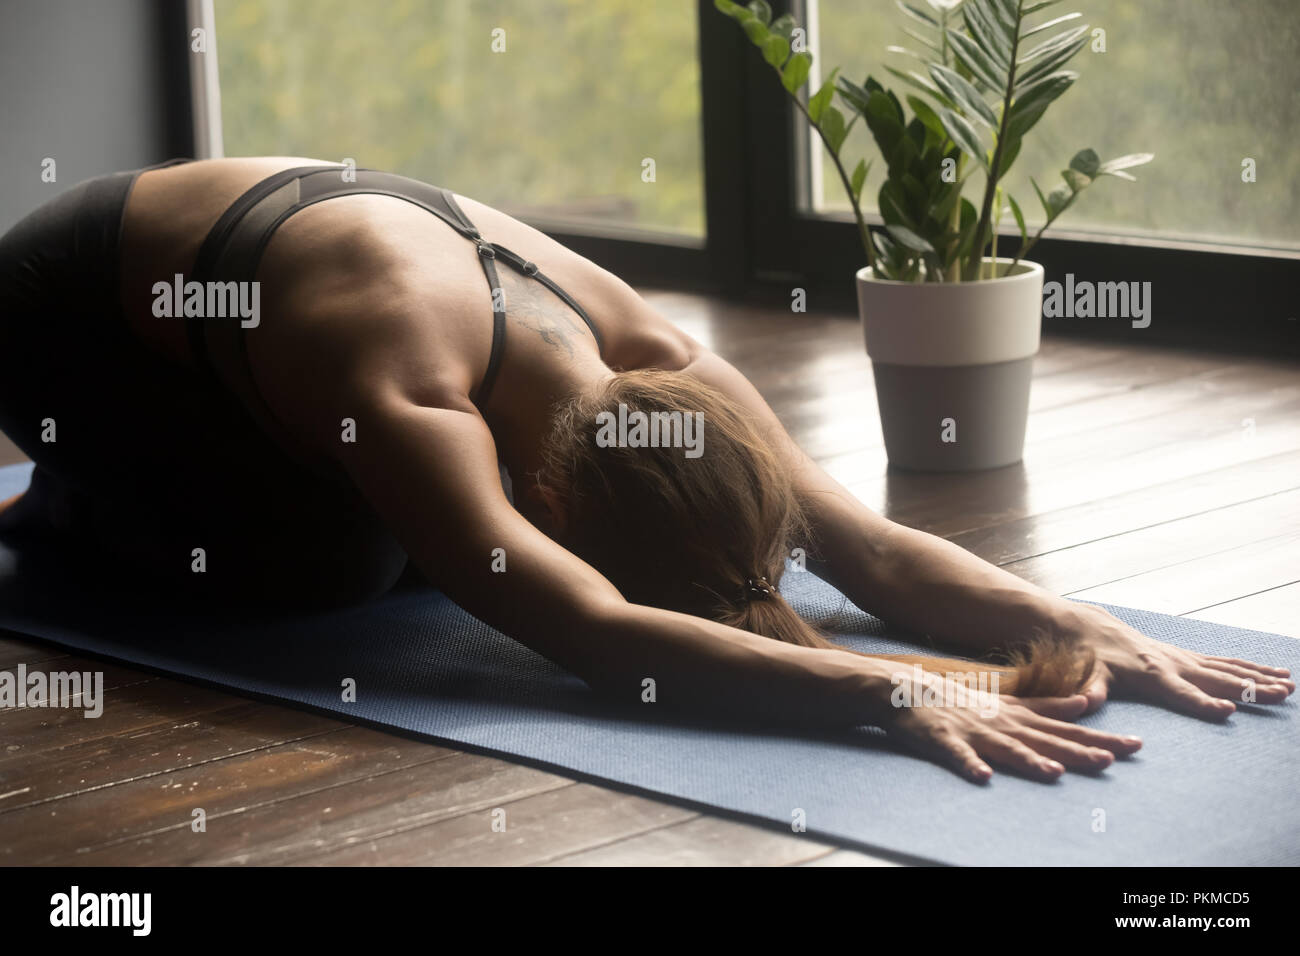 Young yogi woman doing Balasana pose, close up Stock Photo